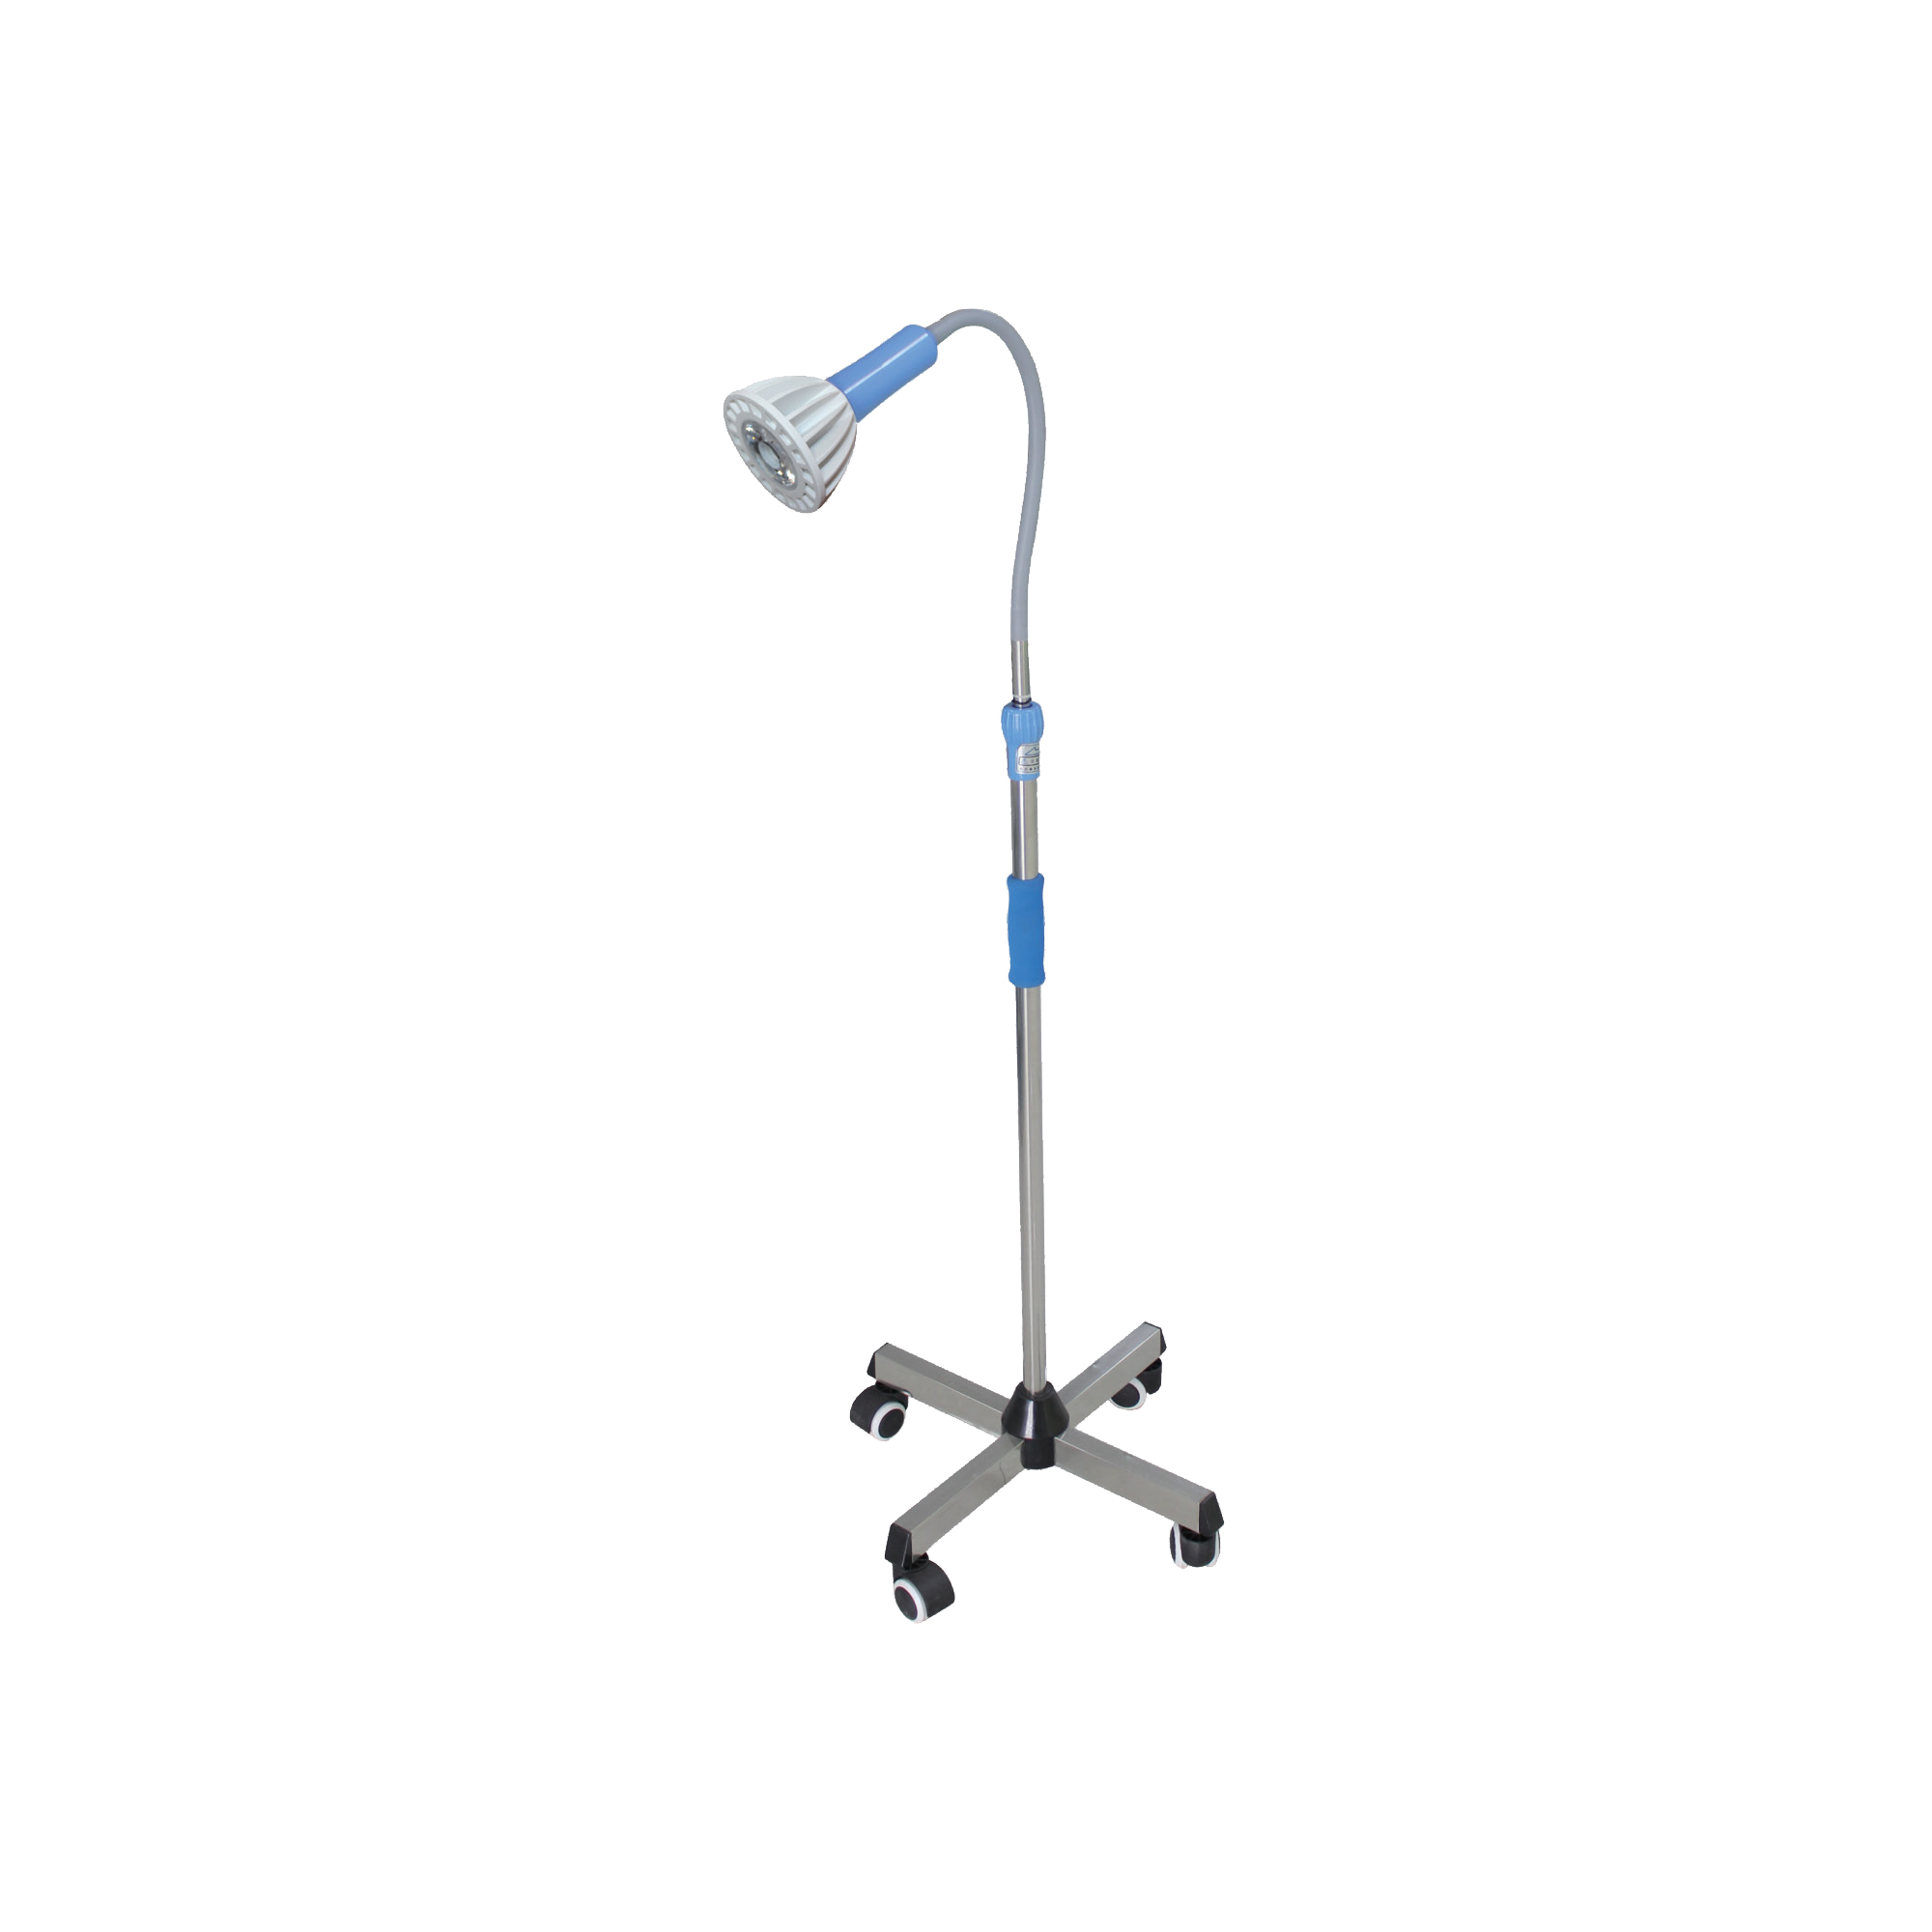 Luz LED portátil para examen médico, lámpara ENT con doble interruptor, equipo de hospital y clínica